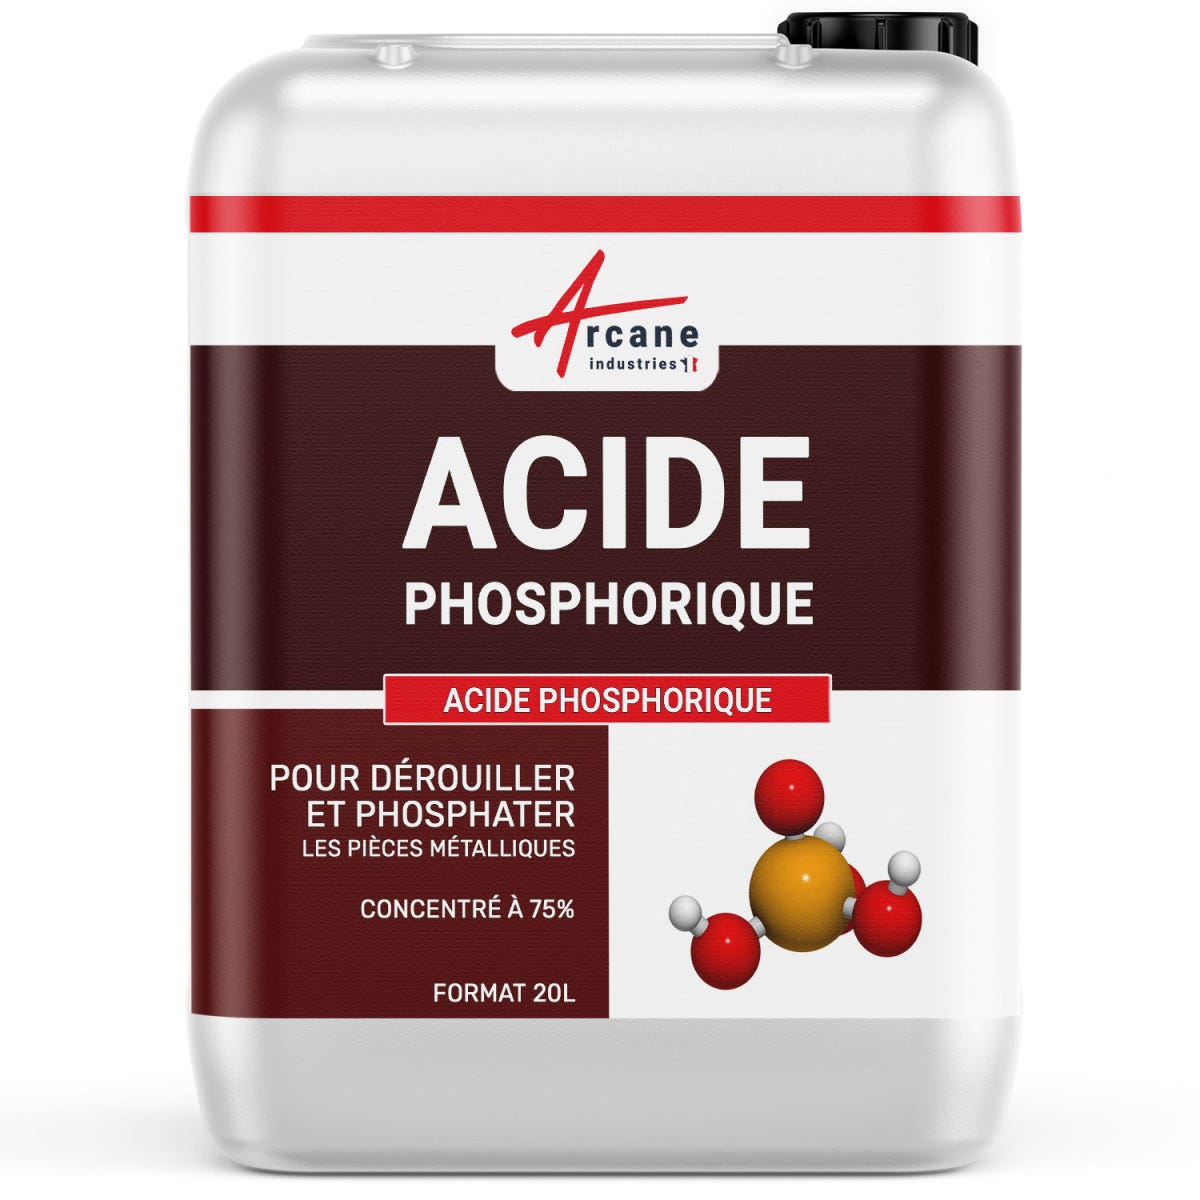 Acide Phosphorique haute concentration - ACIDE PHOSPHORIQUE - 5 L - - ARCANE INDUSTRIES 1